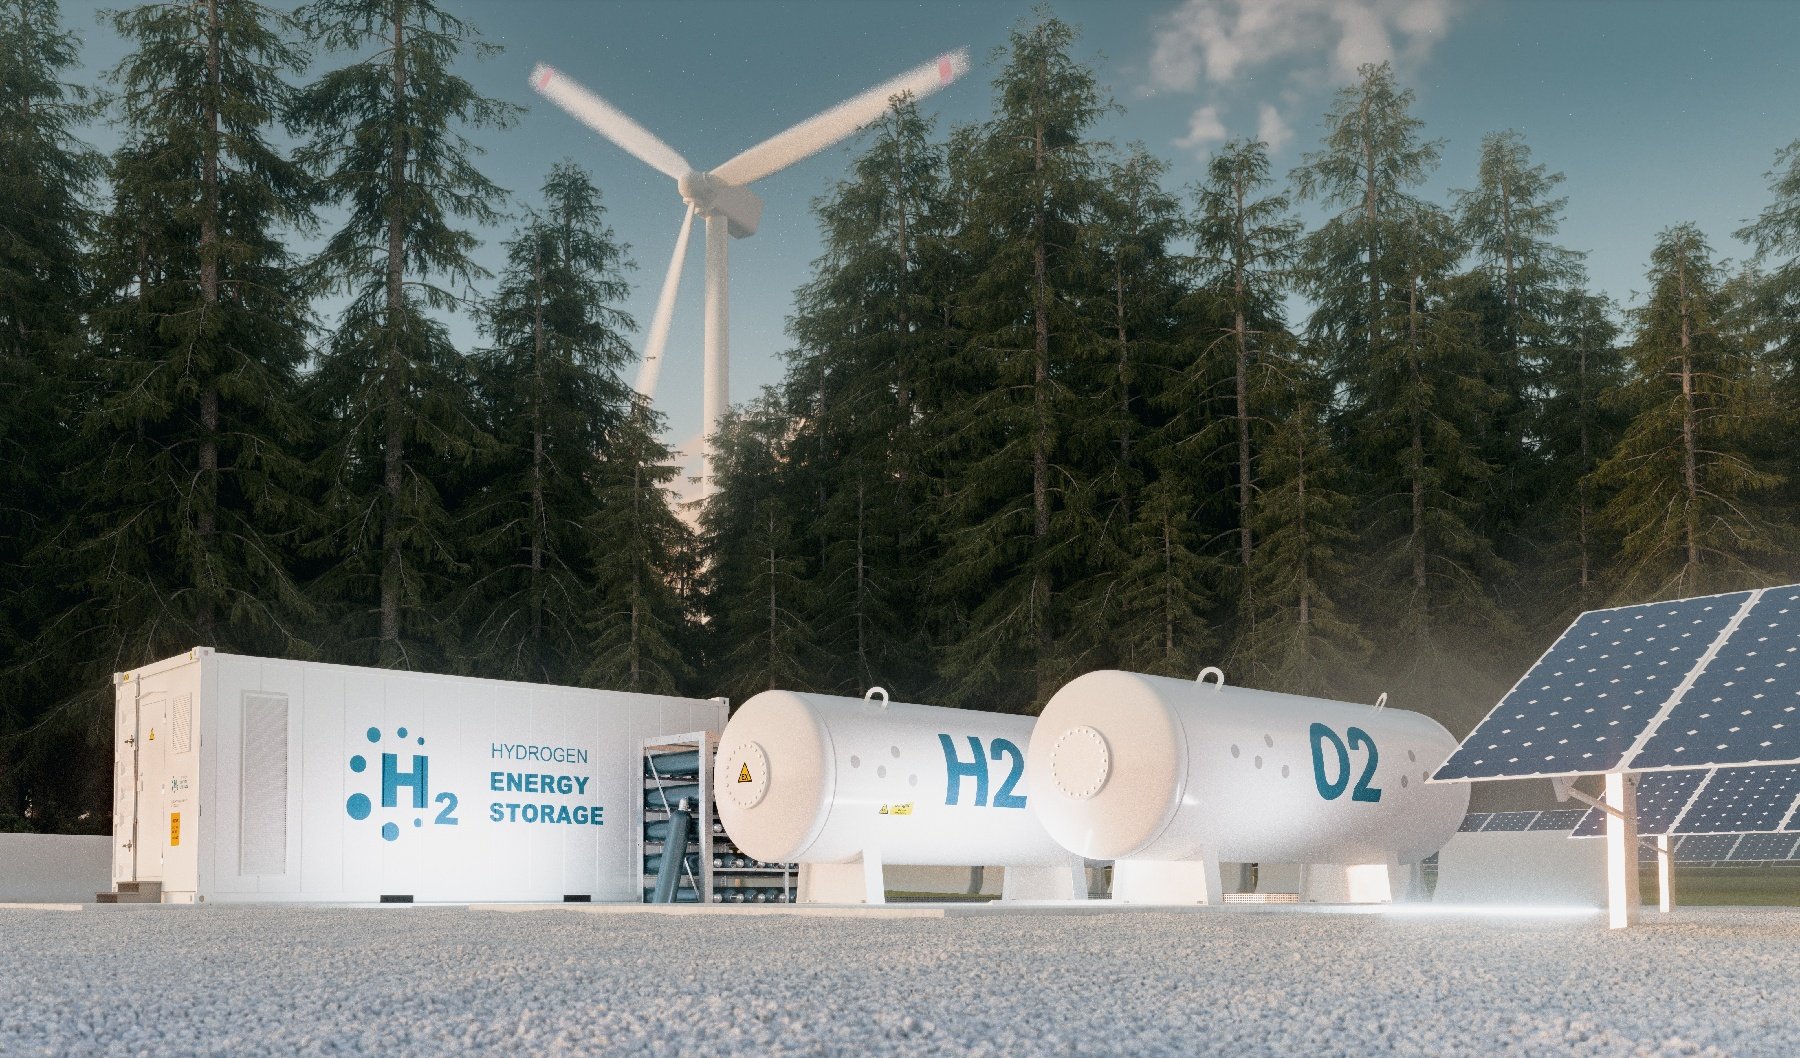 Hydrogen Storage